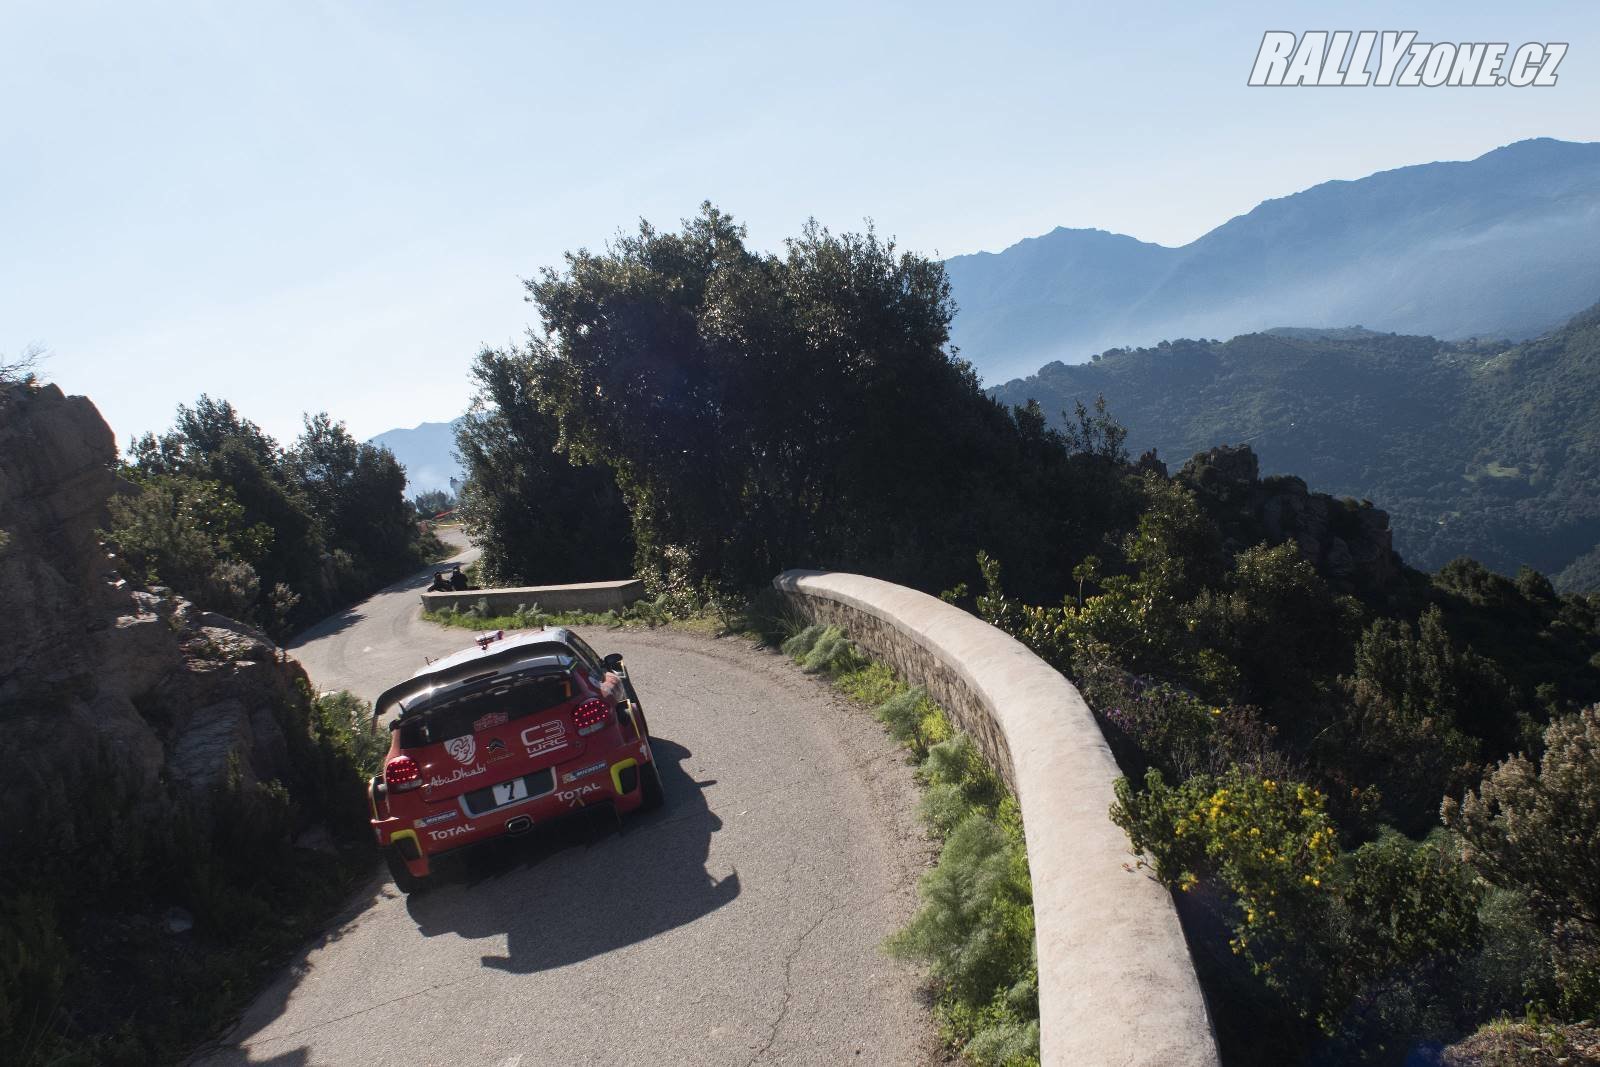 Citroën C3 WRC sice dokázal vyhrát minulou soutěž, ale zatím jej často potkávají různé technické problémy